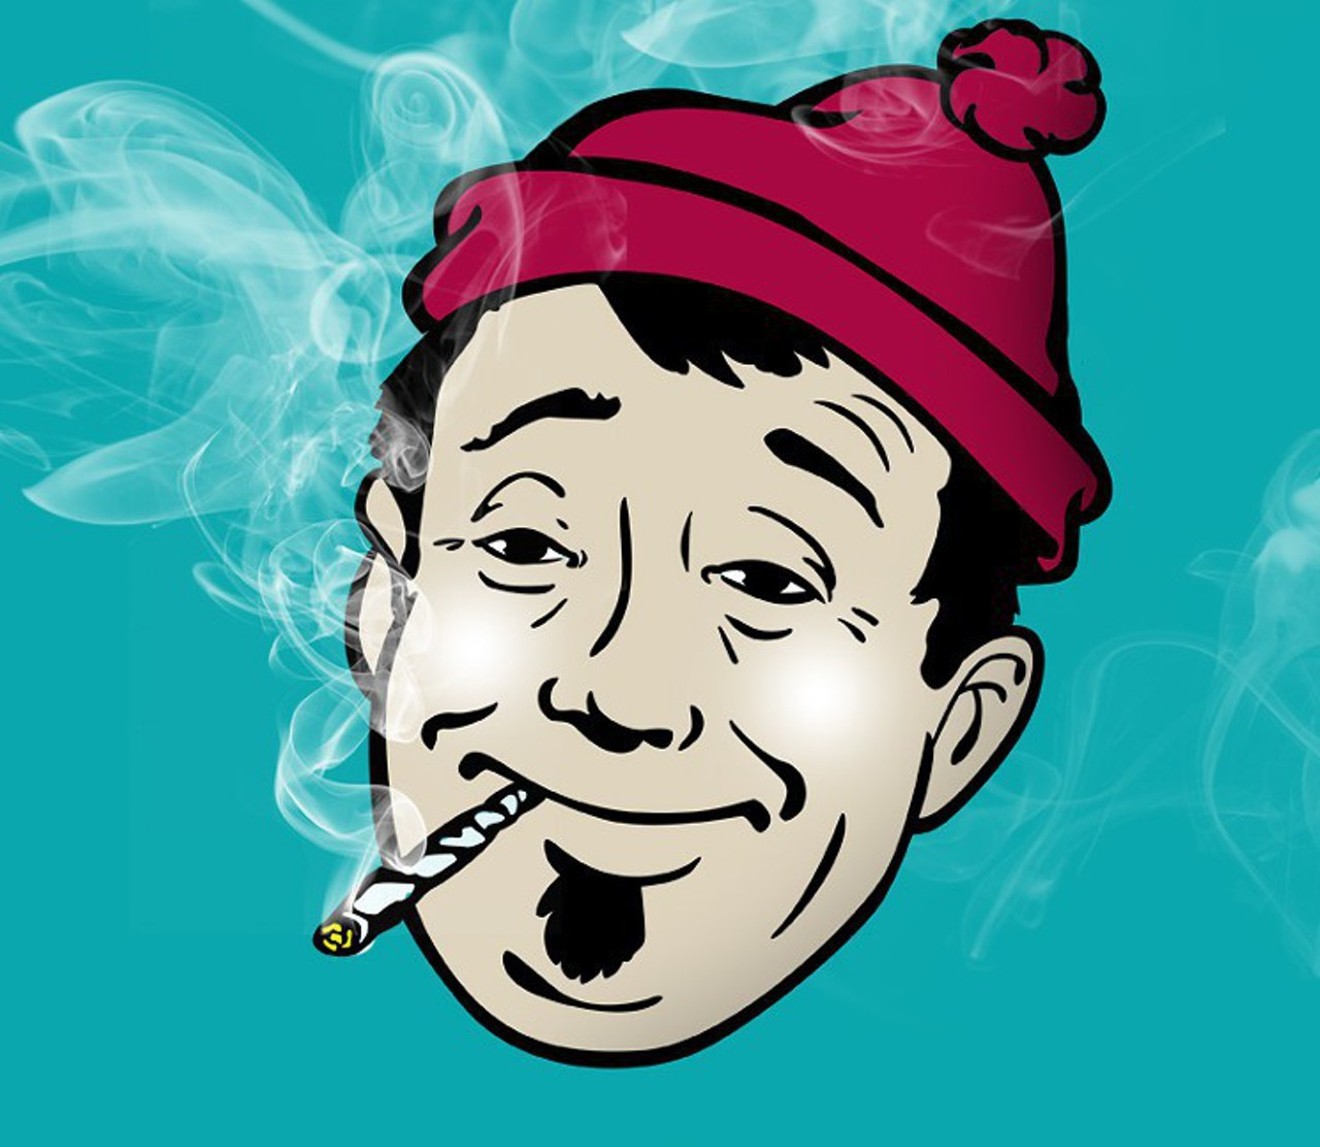 Cartoon stoner smokes weed